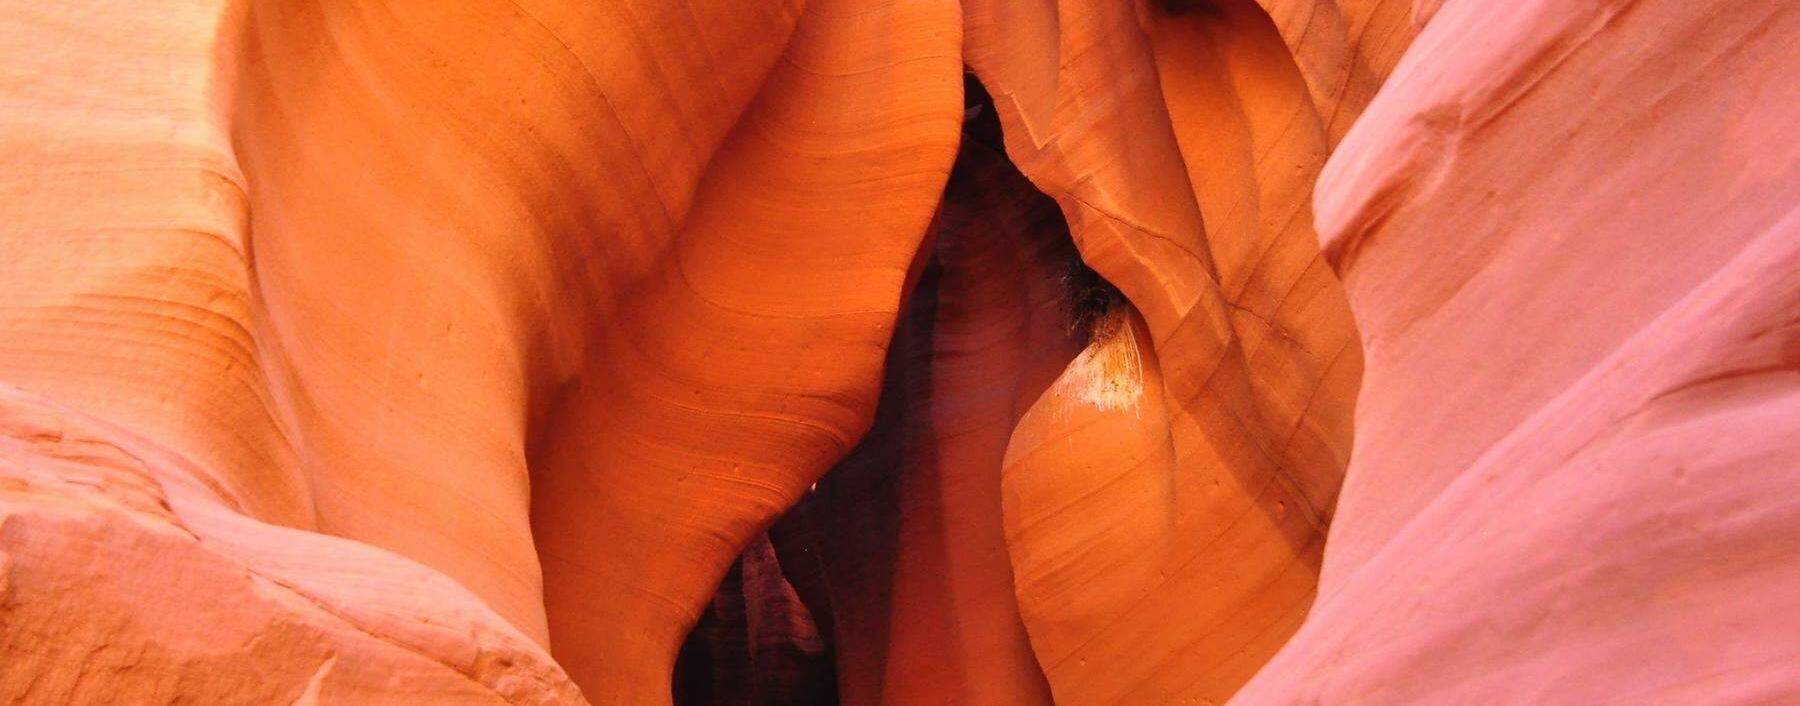 Eine Vulva aus Stein aus Arizona